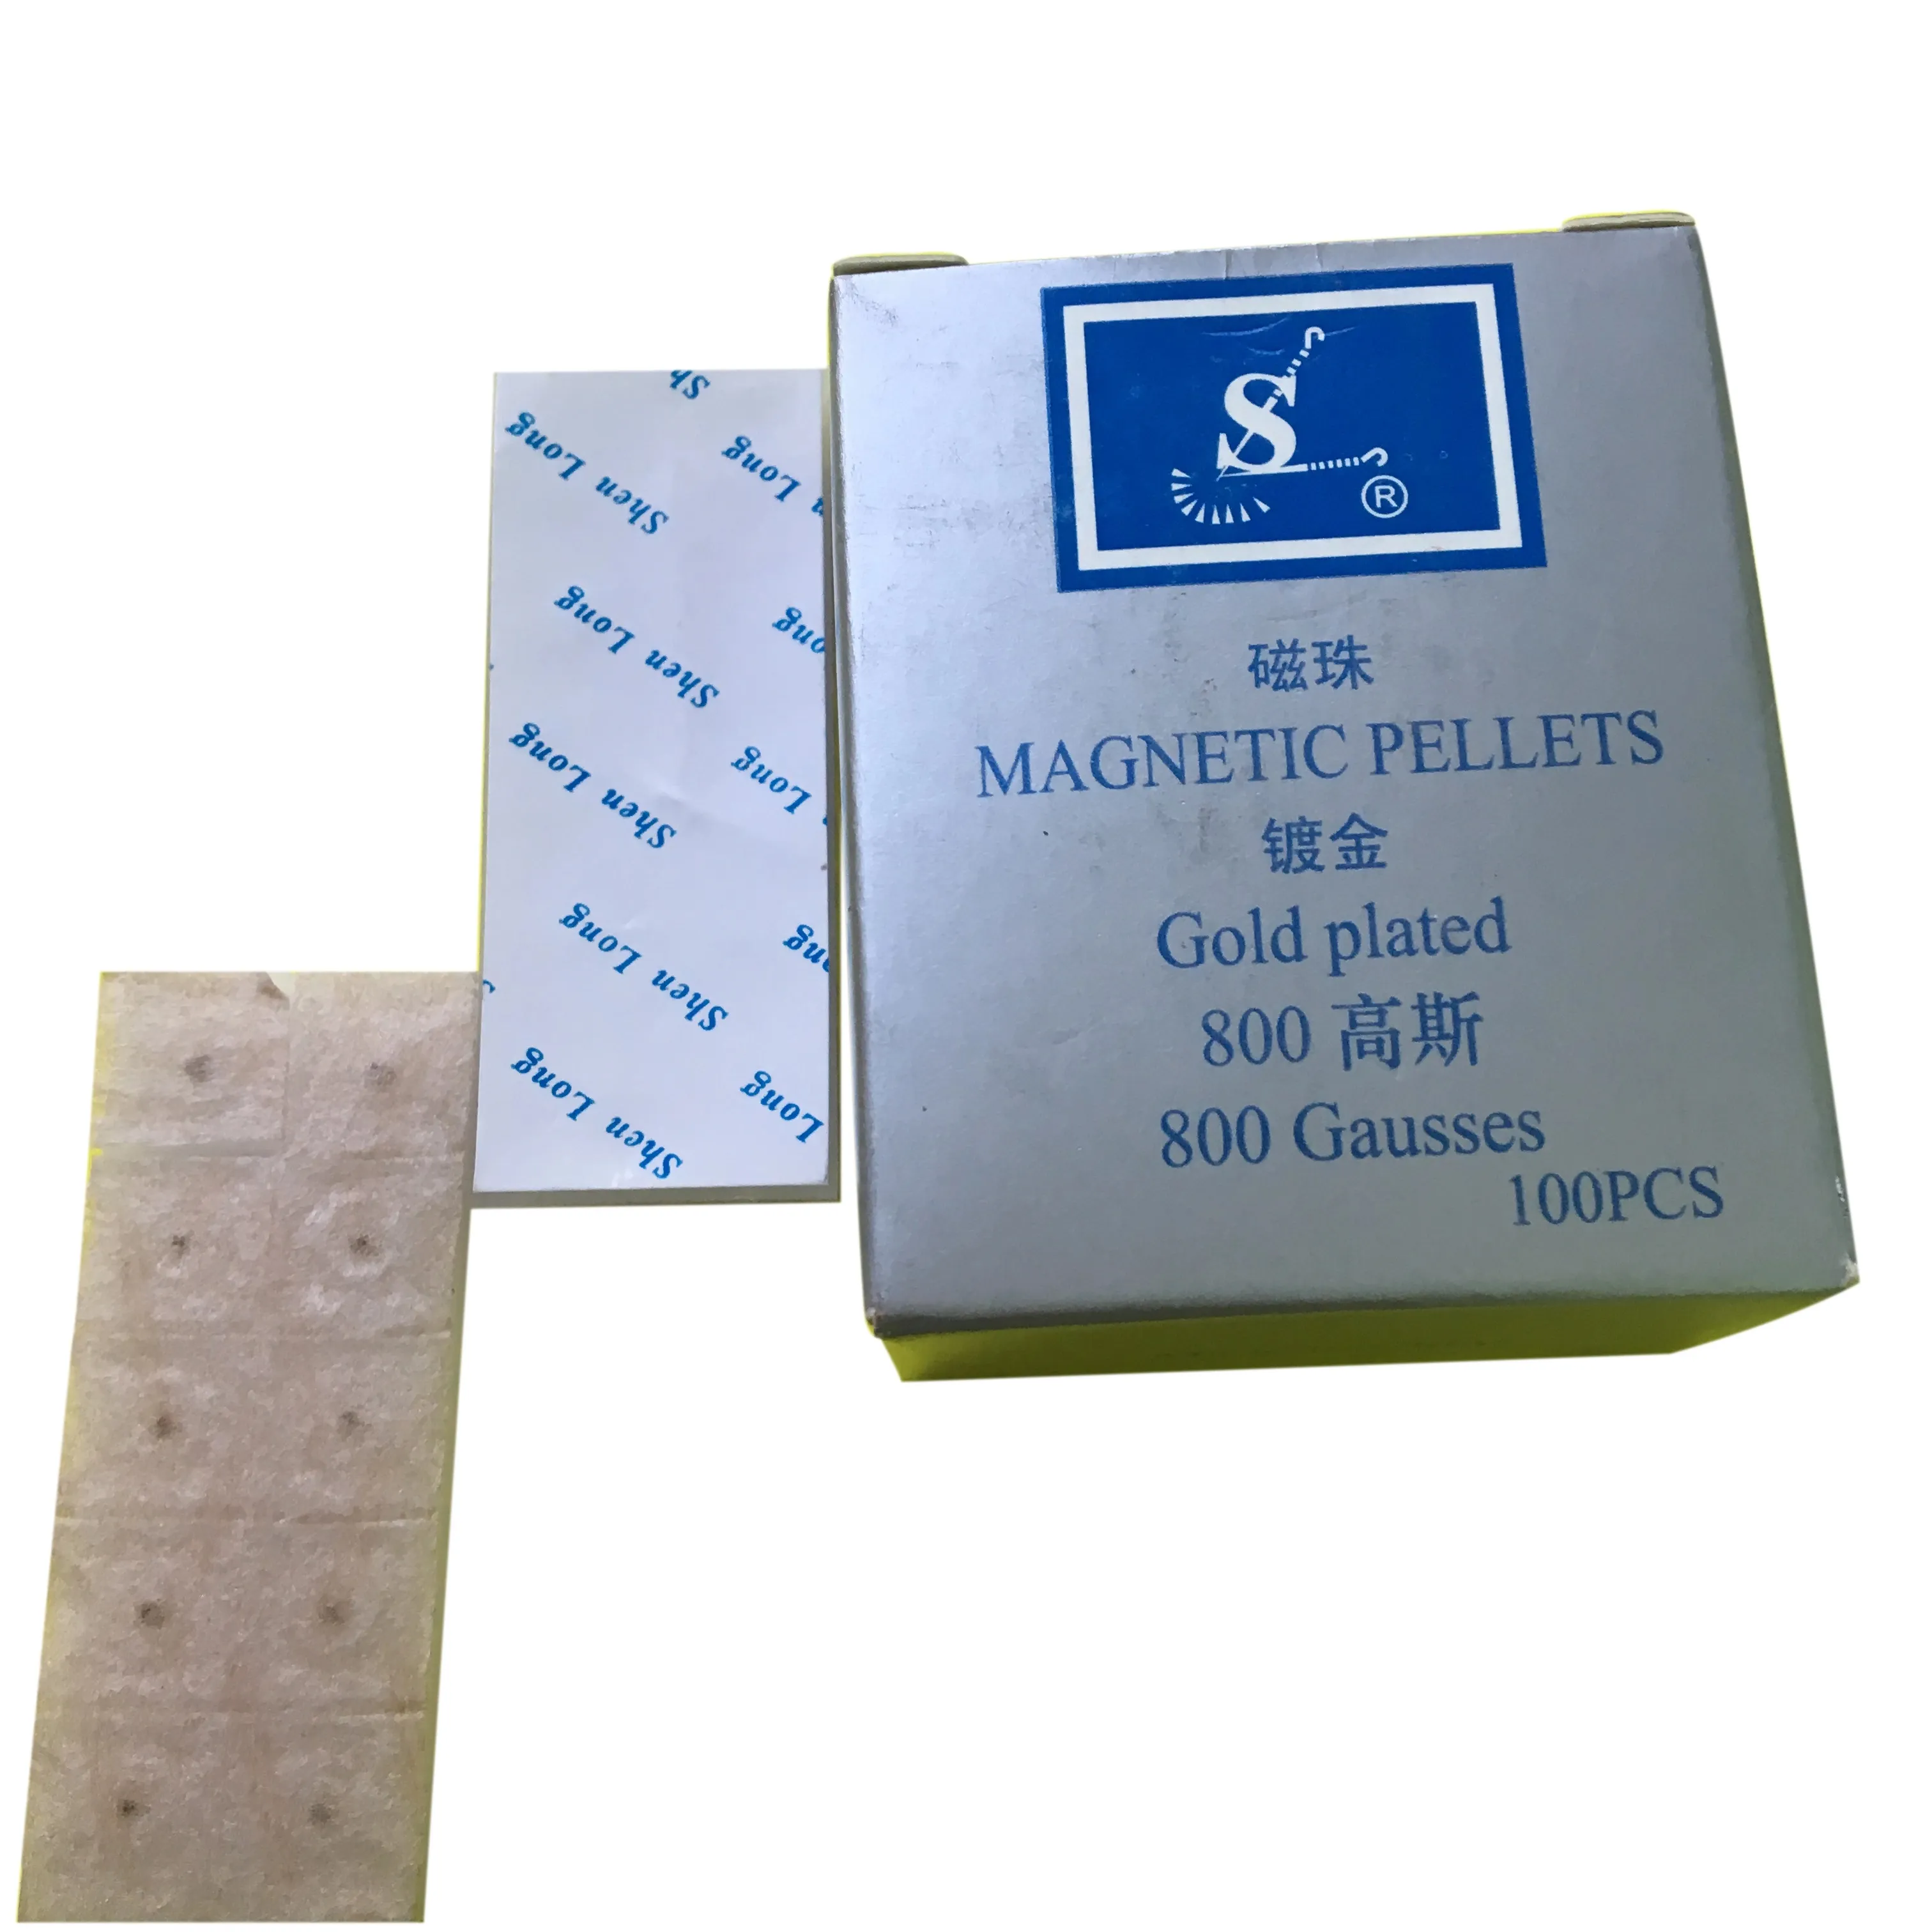 Sterile Magnet pellets der Marke OEM-vergoldete Geräte der traditionellen chinesischen Medizin Fabrik preis (Ohr nadeln/Kugel)